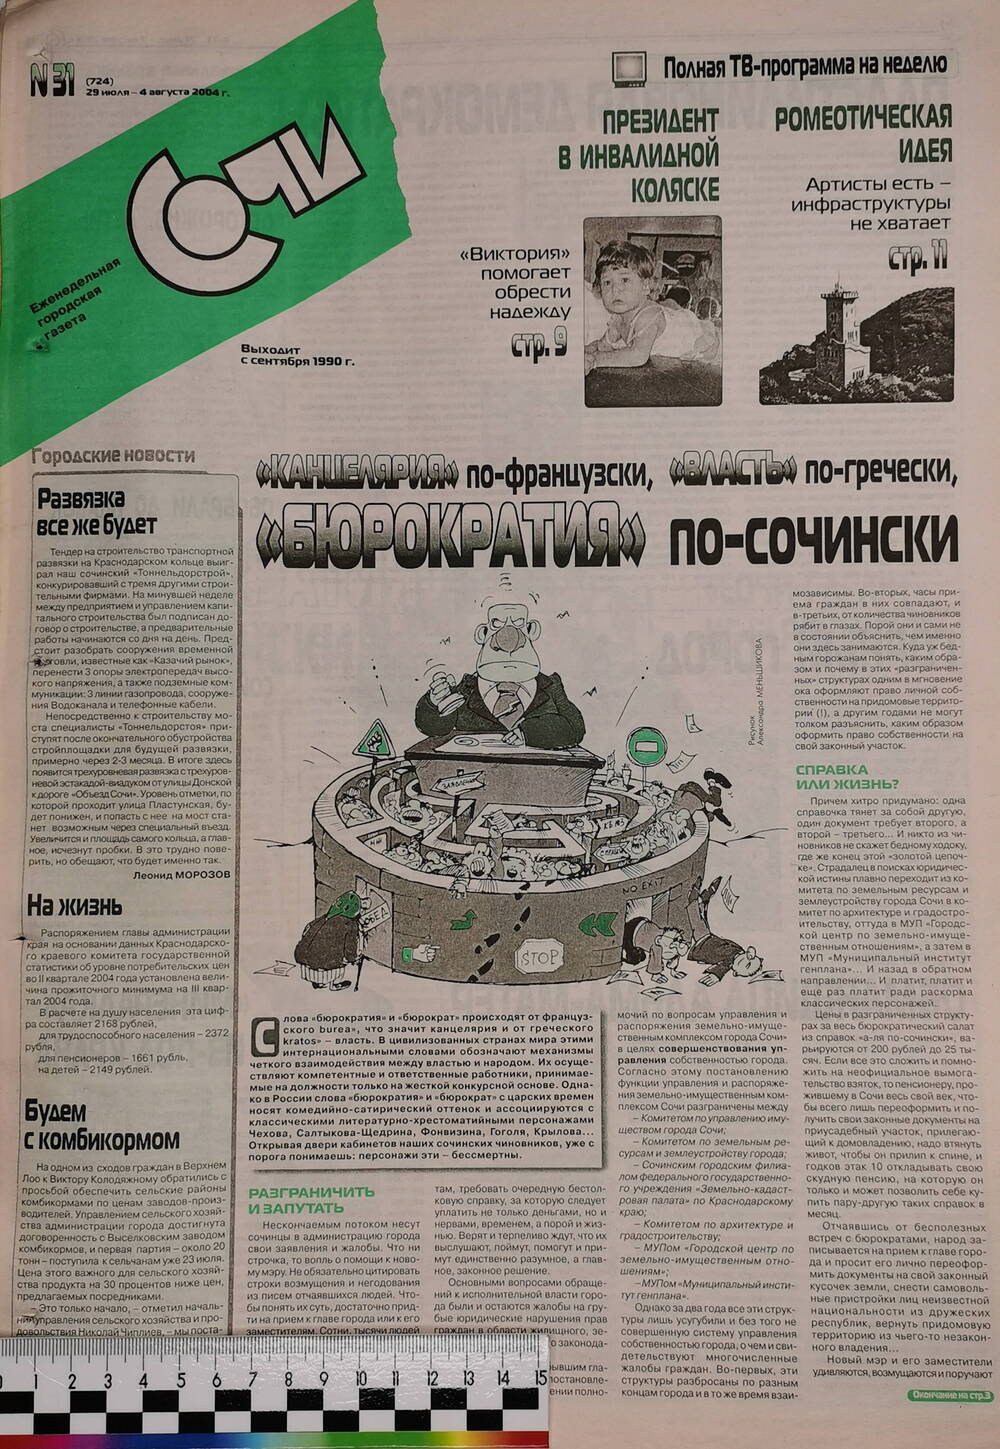 Газета еженедельная городская «Сочи» № 31 (724) с 29 июля по 4 августа 2004 г.